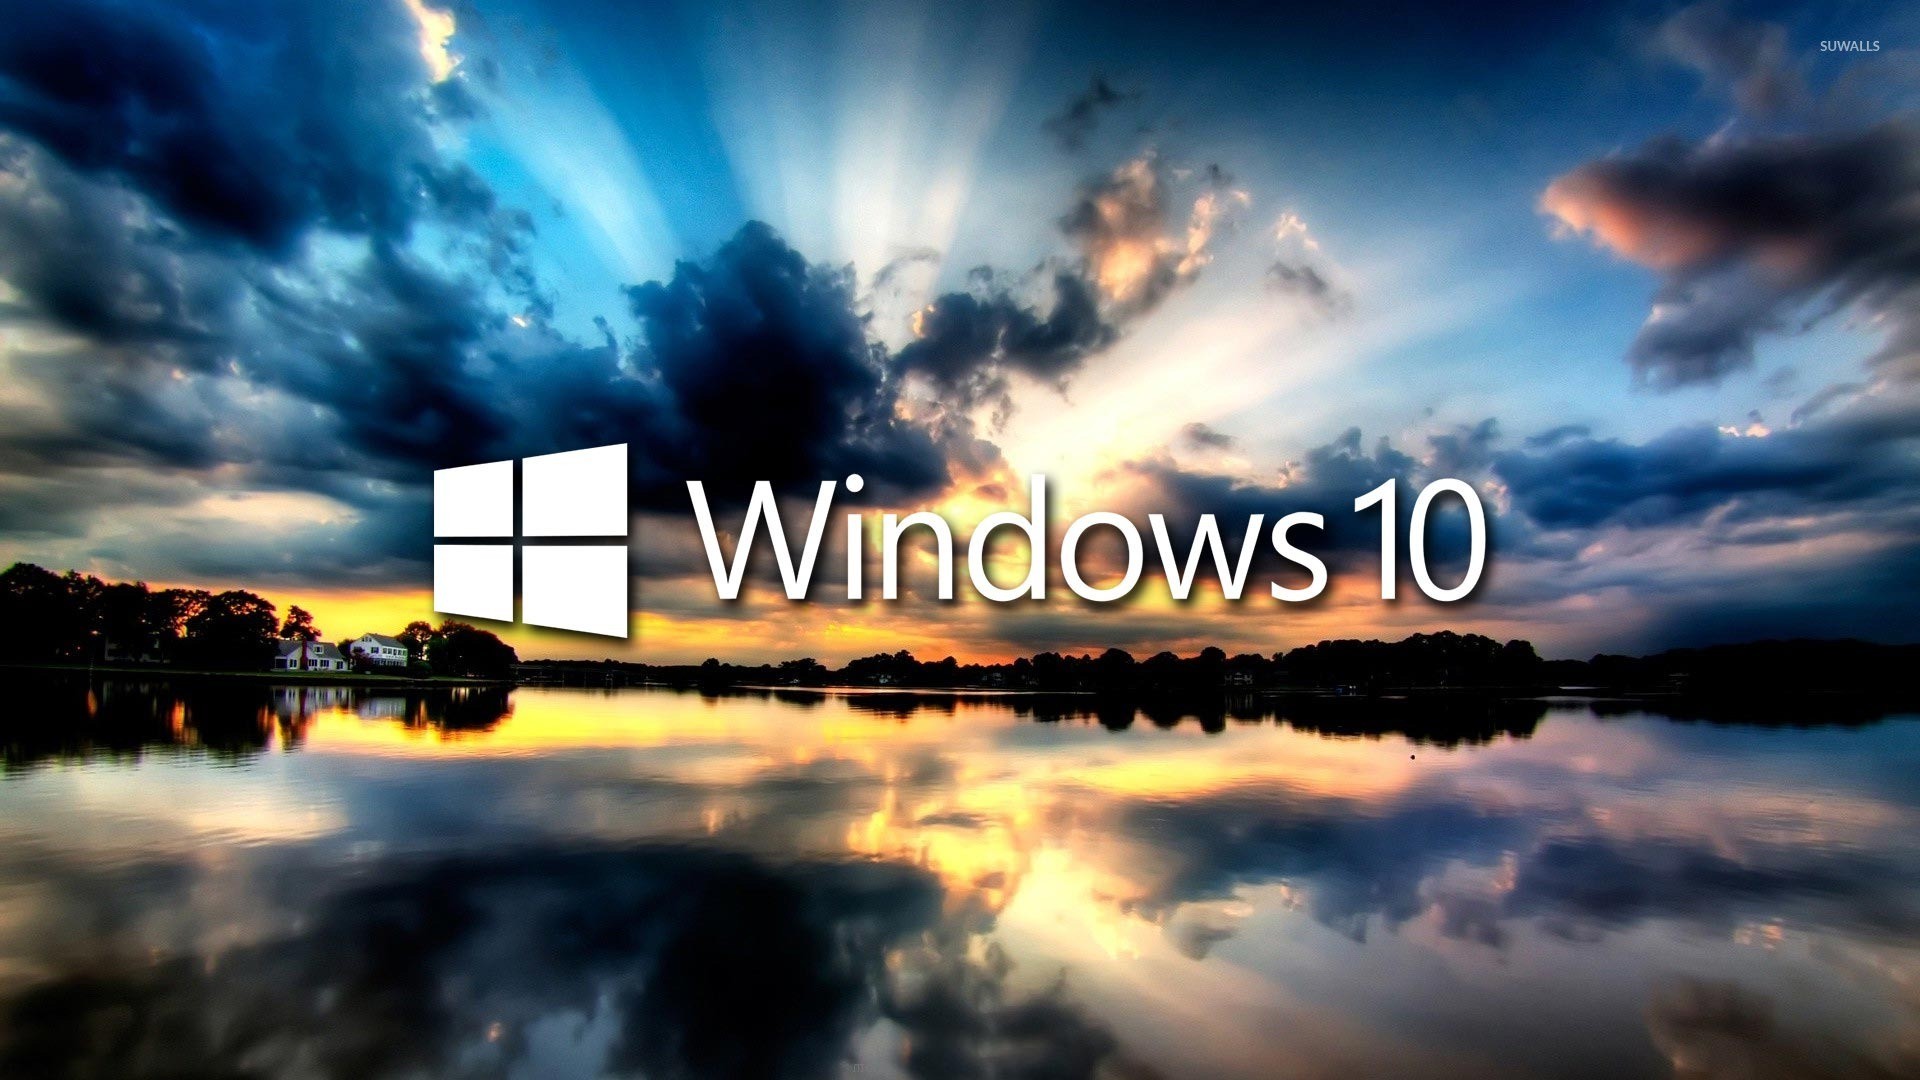 15+ Windows 10 Wallpaper Desktop Pictures ~ Best Wallpaper